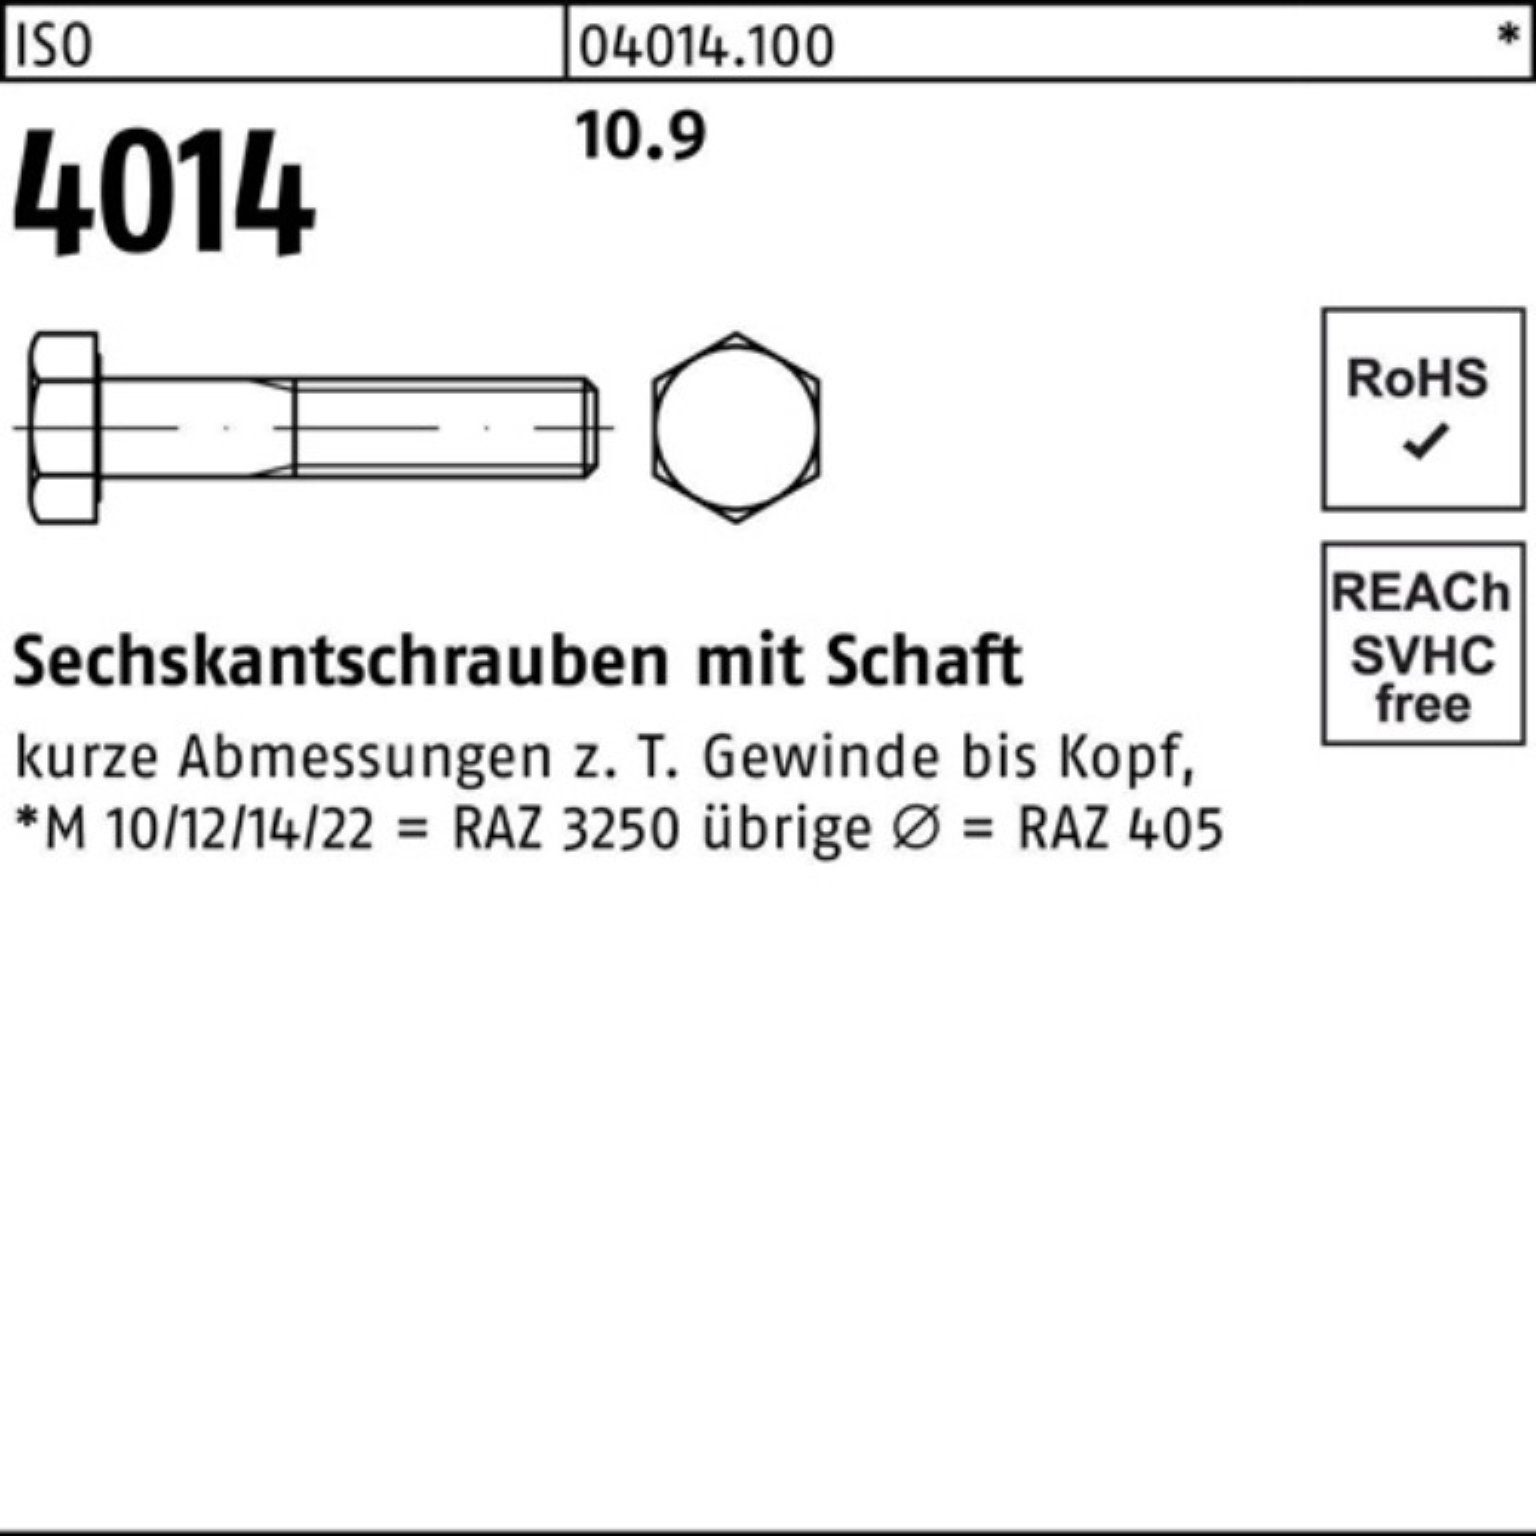 Bufab Sechskantschraube 200er Pack Sechskantschraube 10.9 M8x ISO Stück 35 200 IS 4014 Schaft